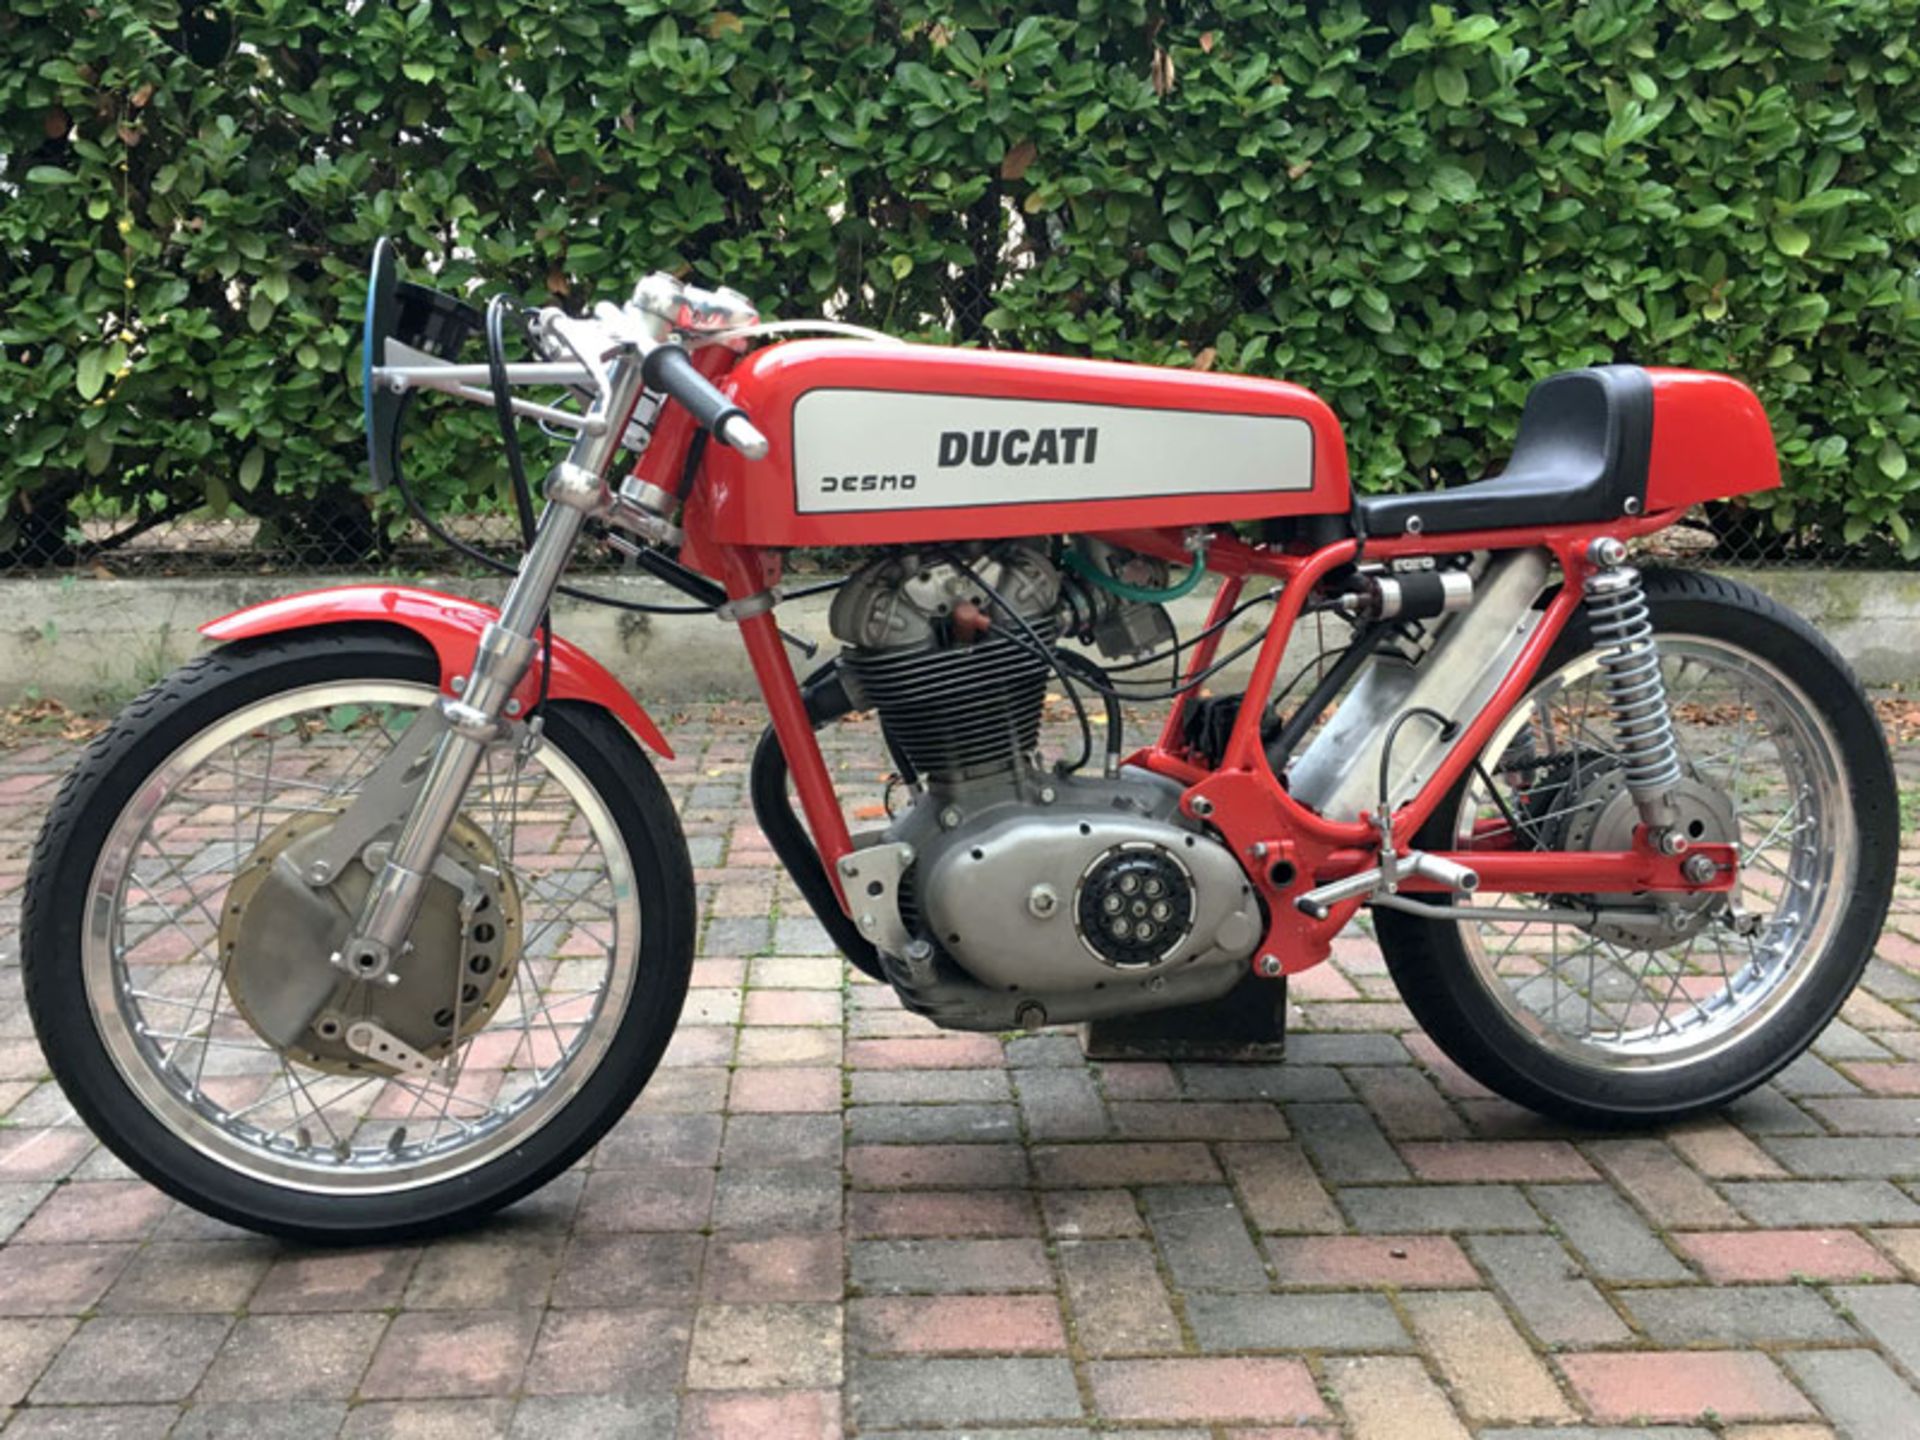 1968 Ducati Desmo - Image 2 of 5